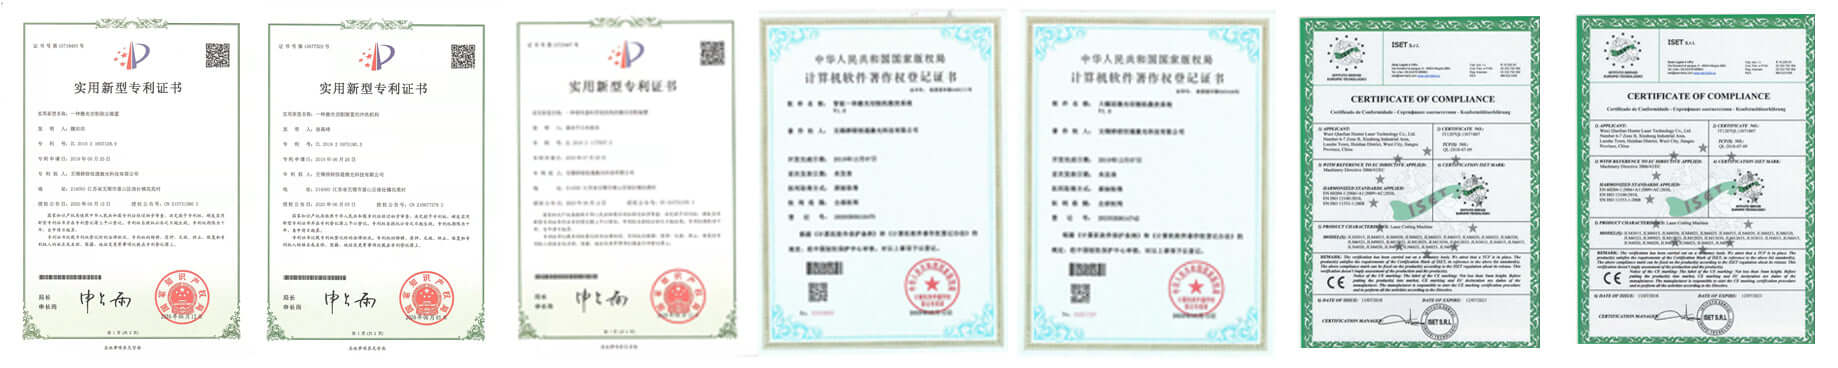 laser cutting machine certificates